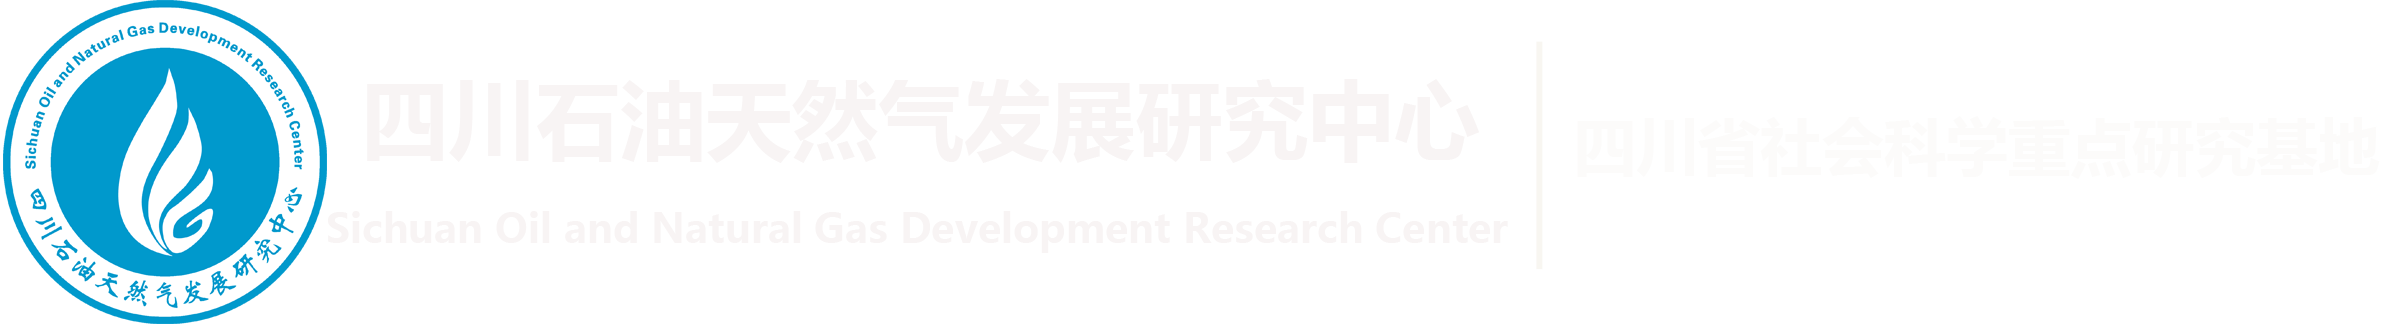 201801039-四川澳门十大电子游戏网站推荐与天然气